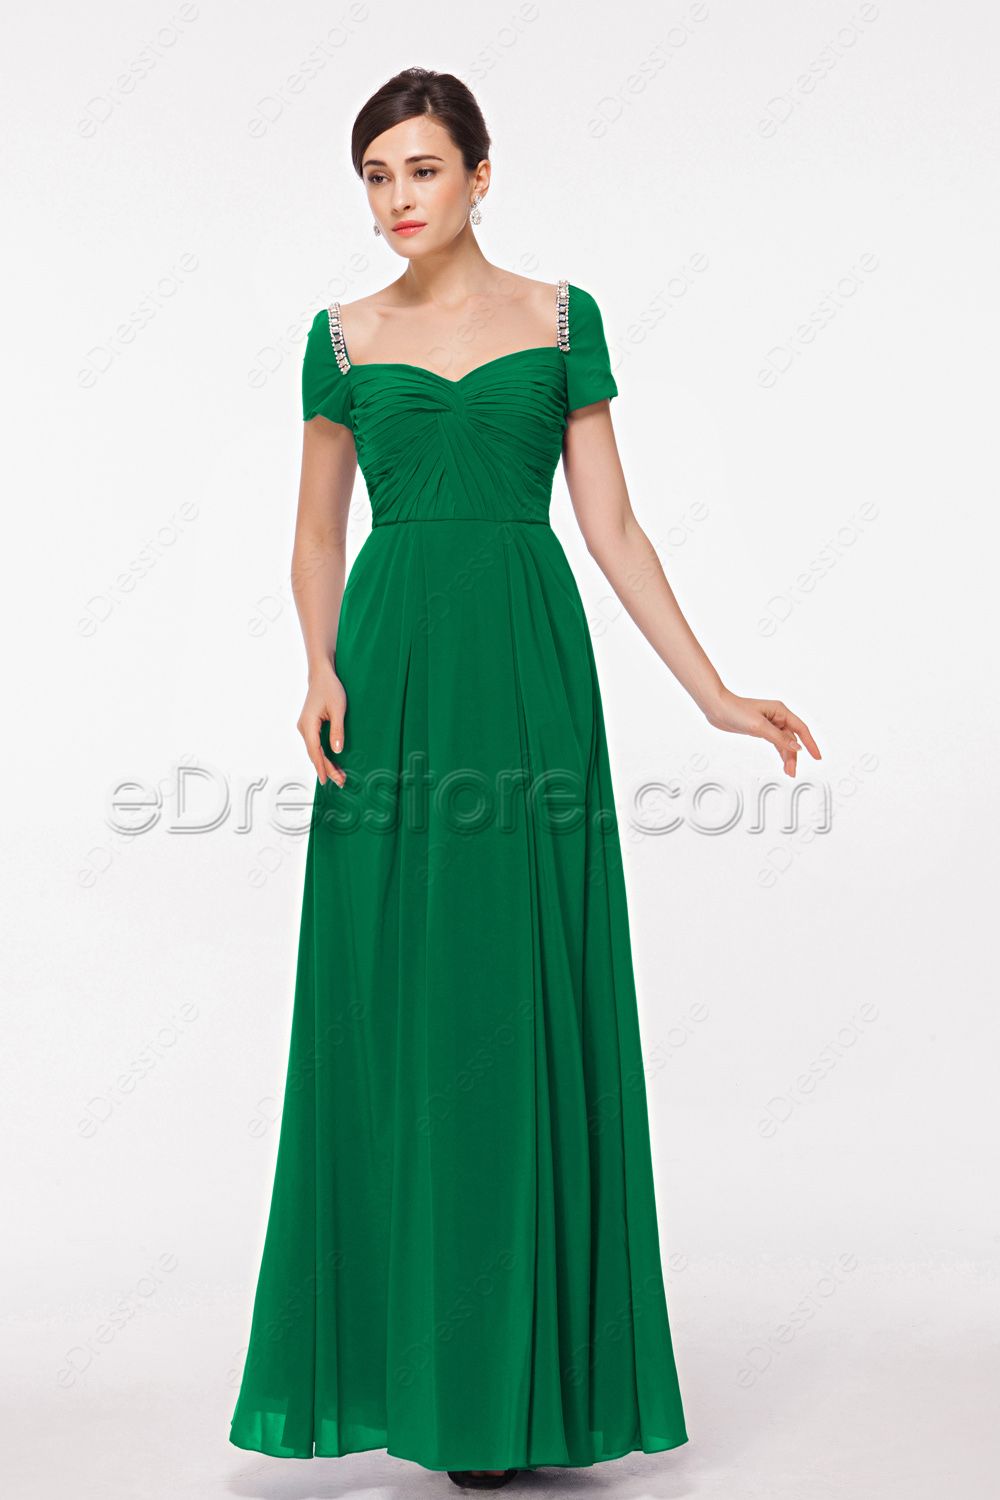 Modest Emerald Green Evening Dress with Sleeves | eDresstore